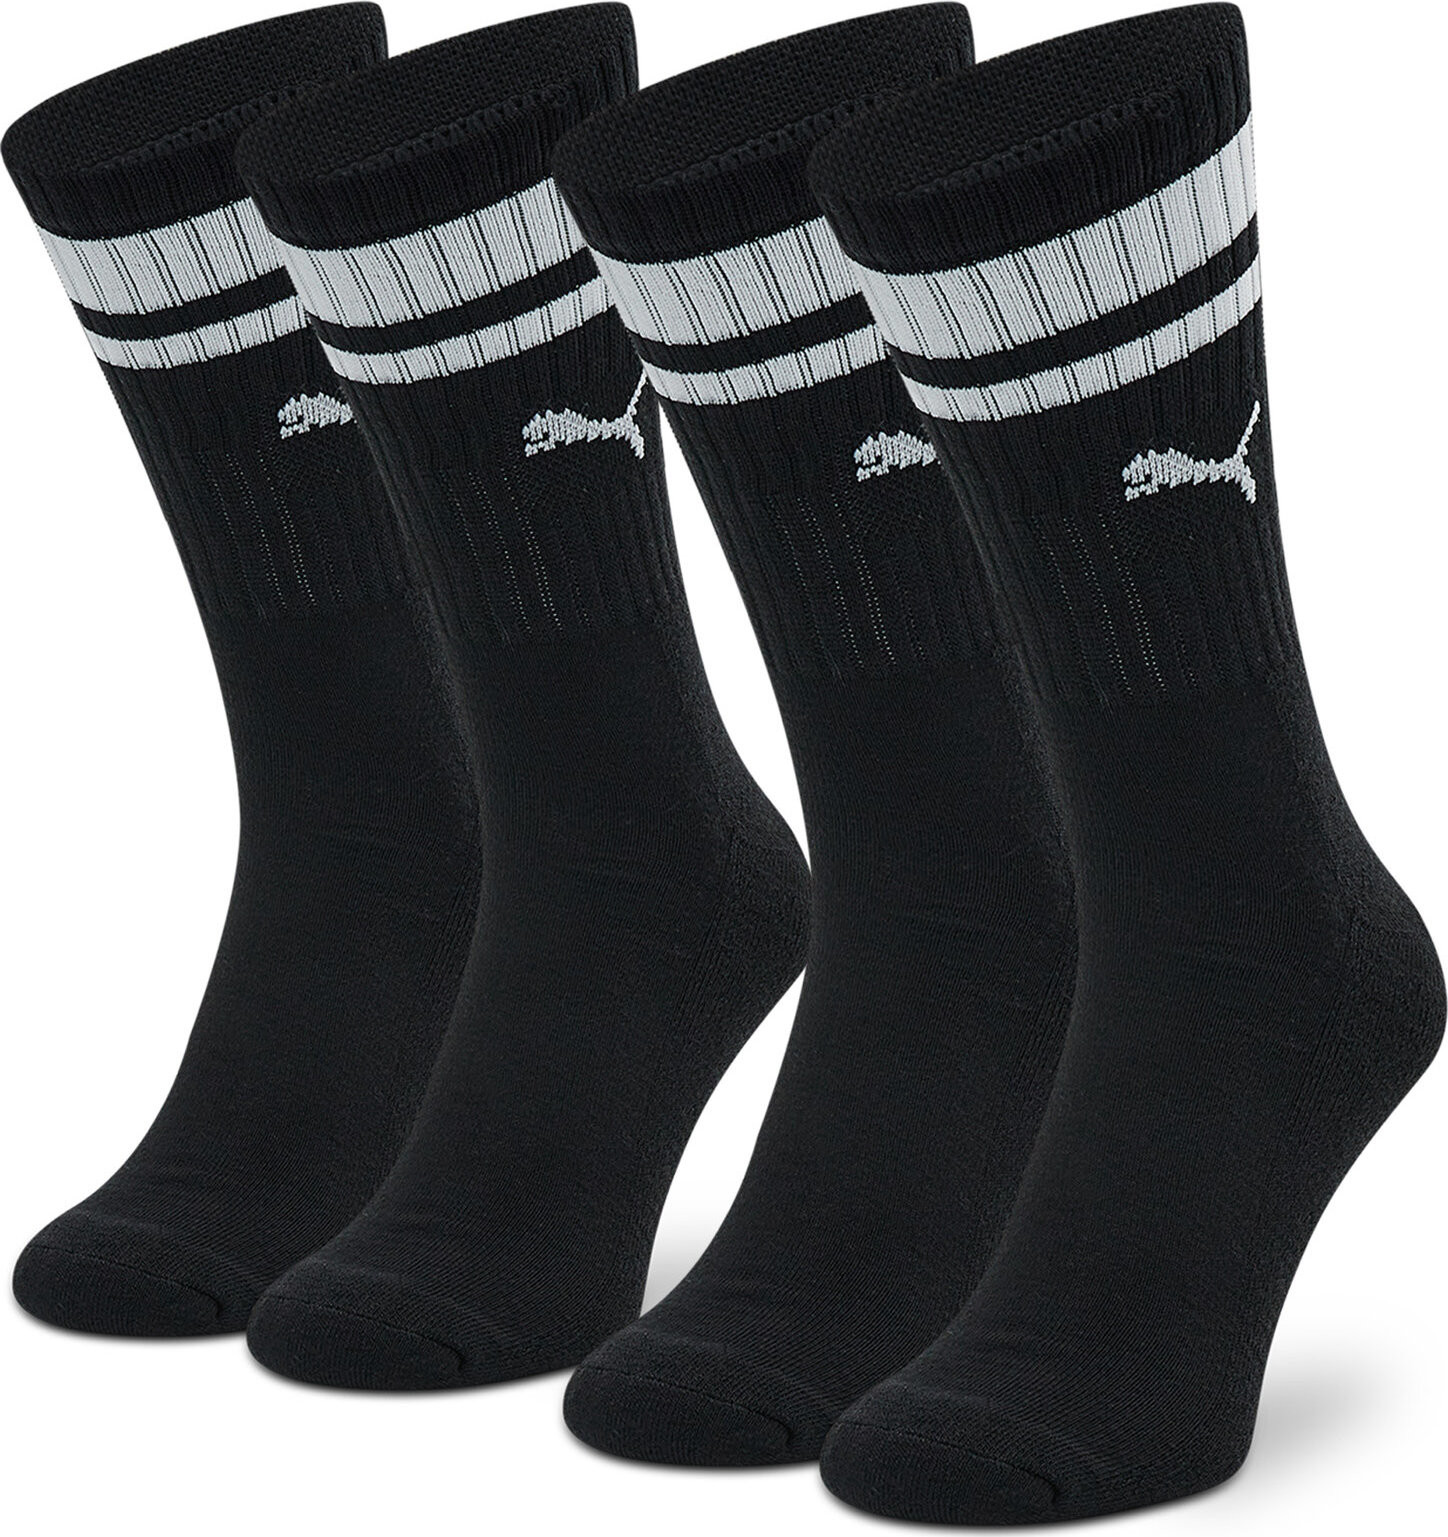 Sada 2 párů vysokých ponožek unisex Puma 907944 Black 01